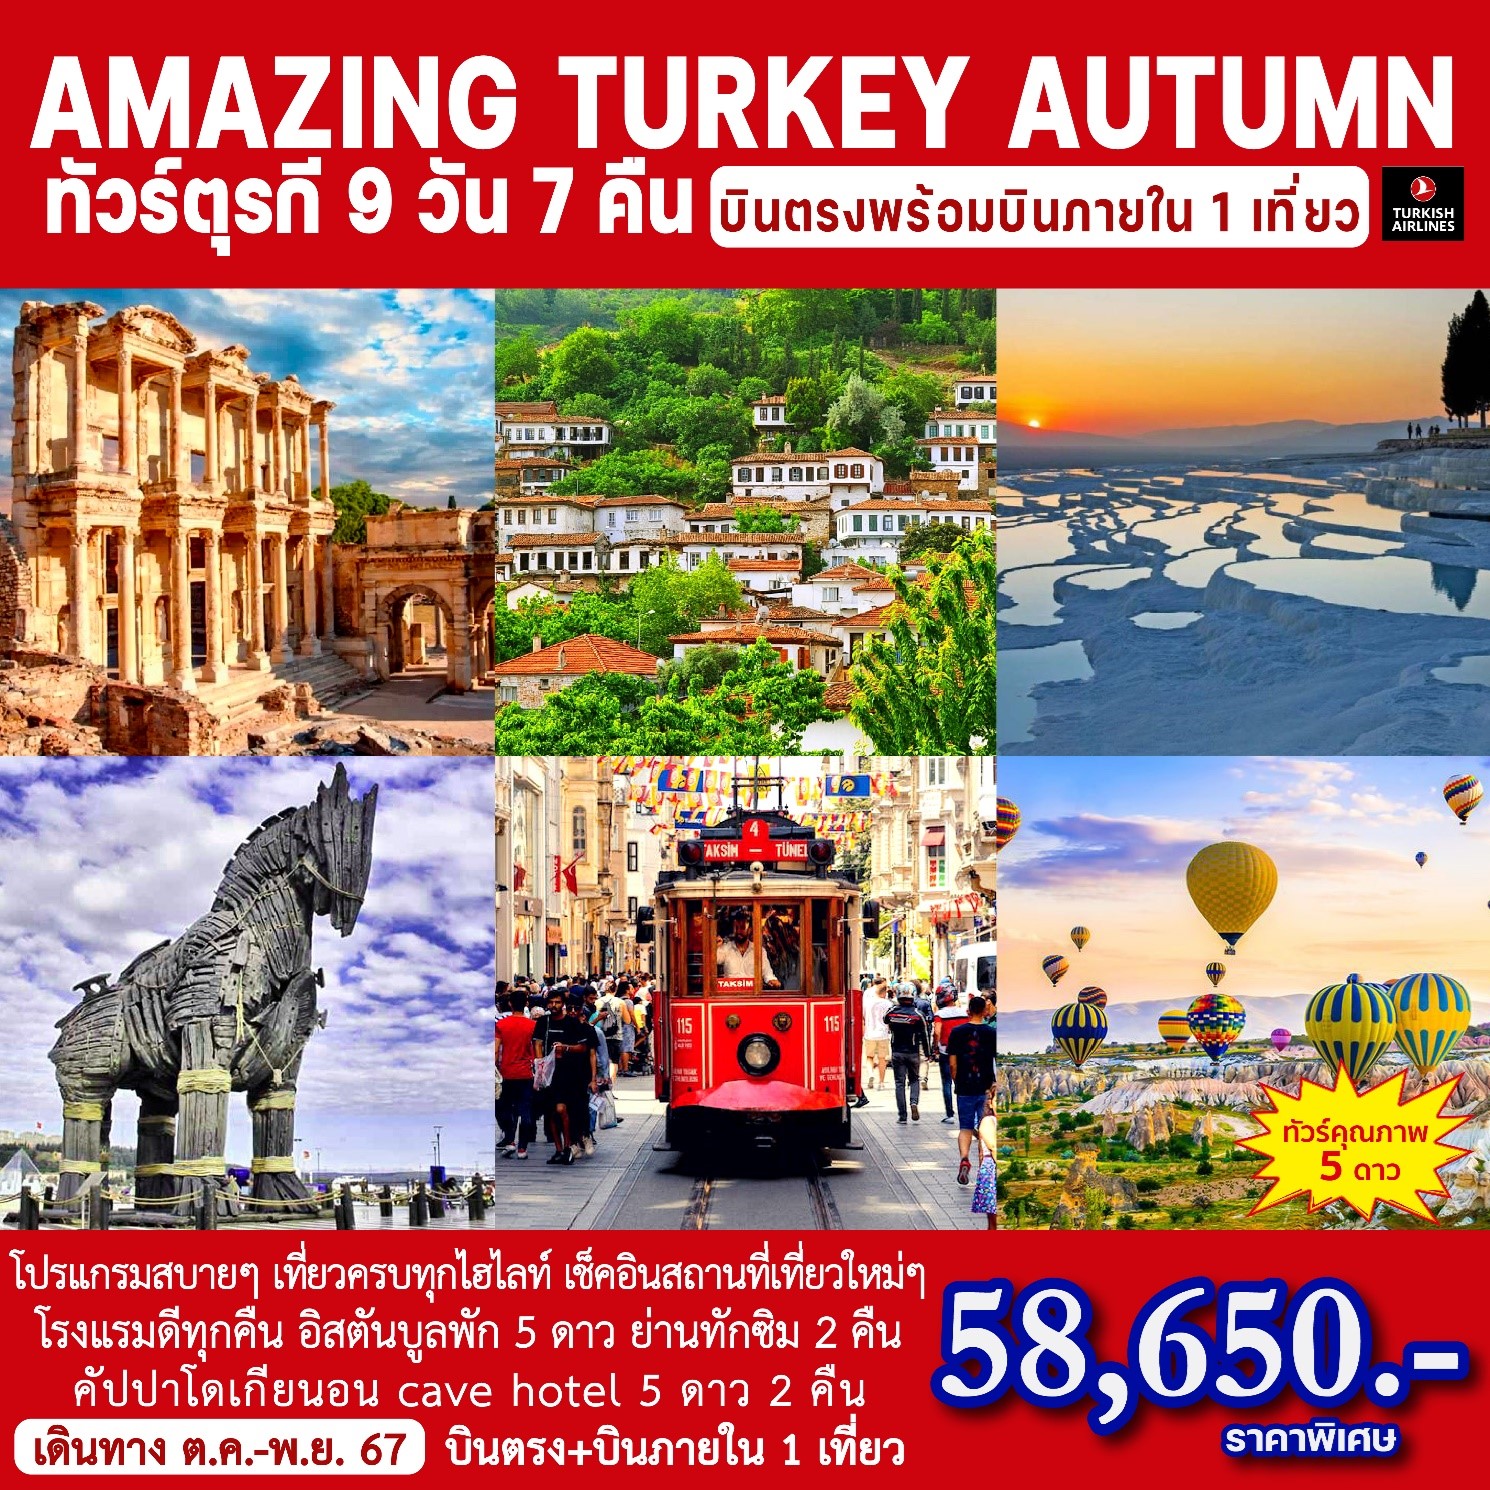 ทัวร์ตุรกี AMAZING TURKEY AUTUMN 9วัน 7คืน (TK)